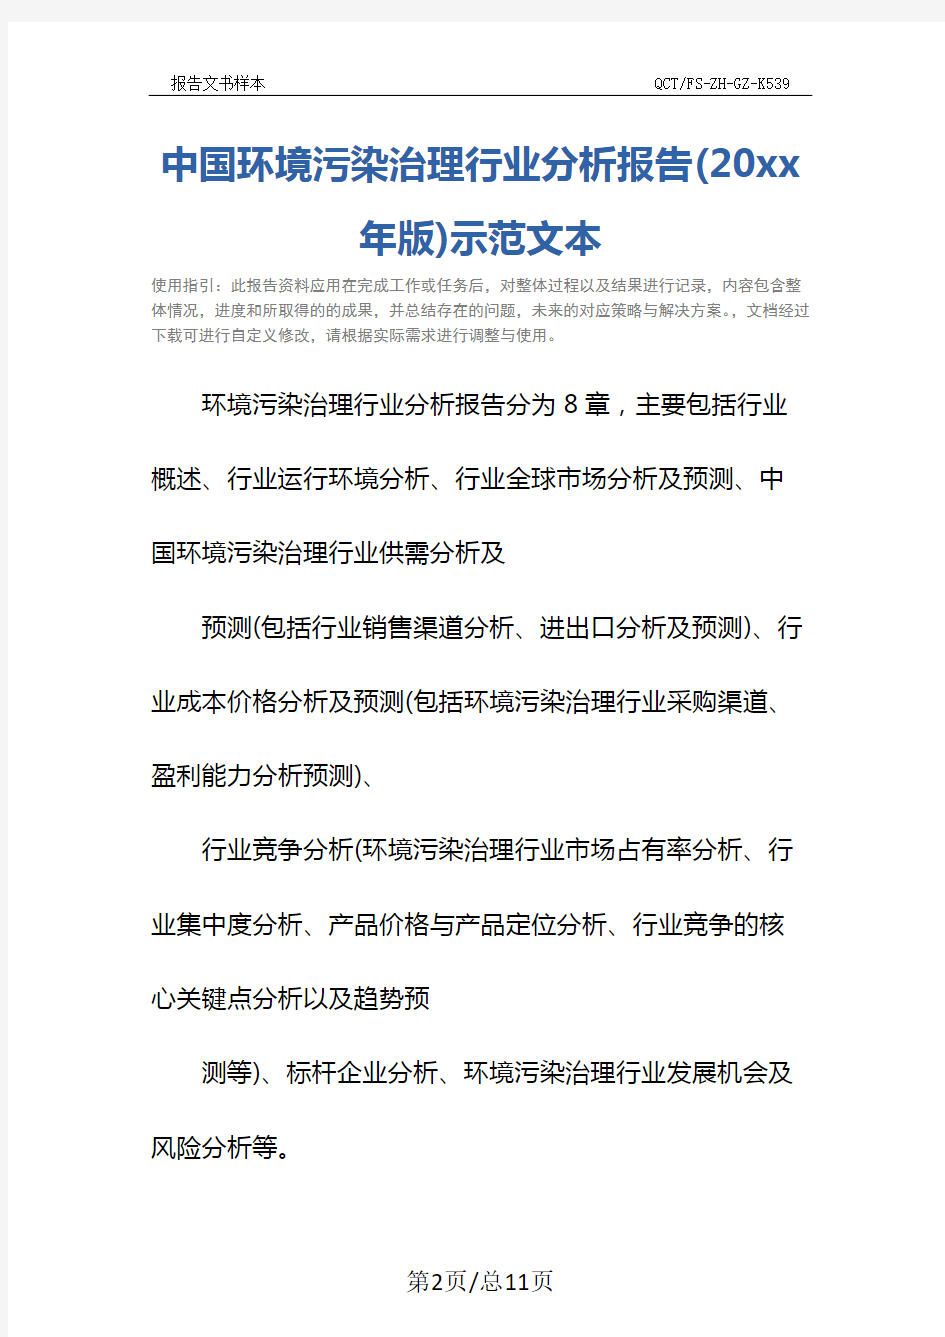 中国环境污染治理行业分析报告(20xx年版)示范文本